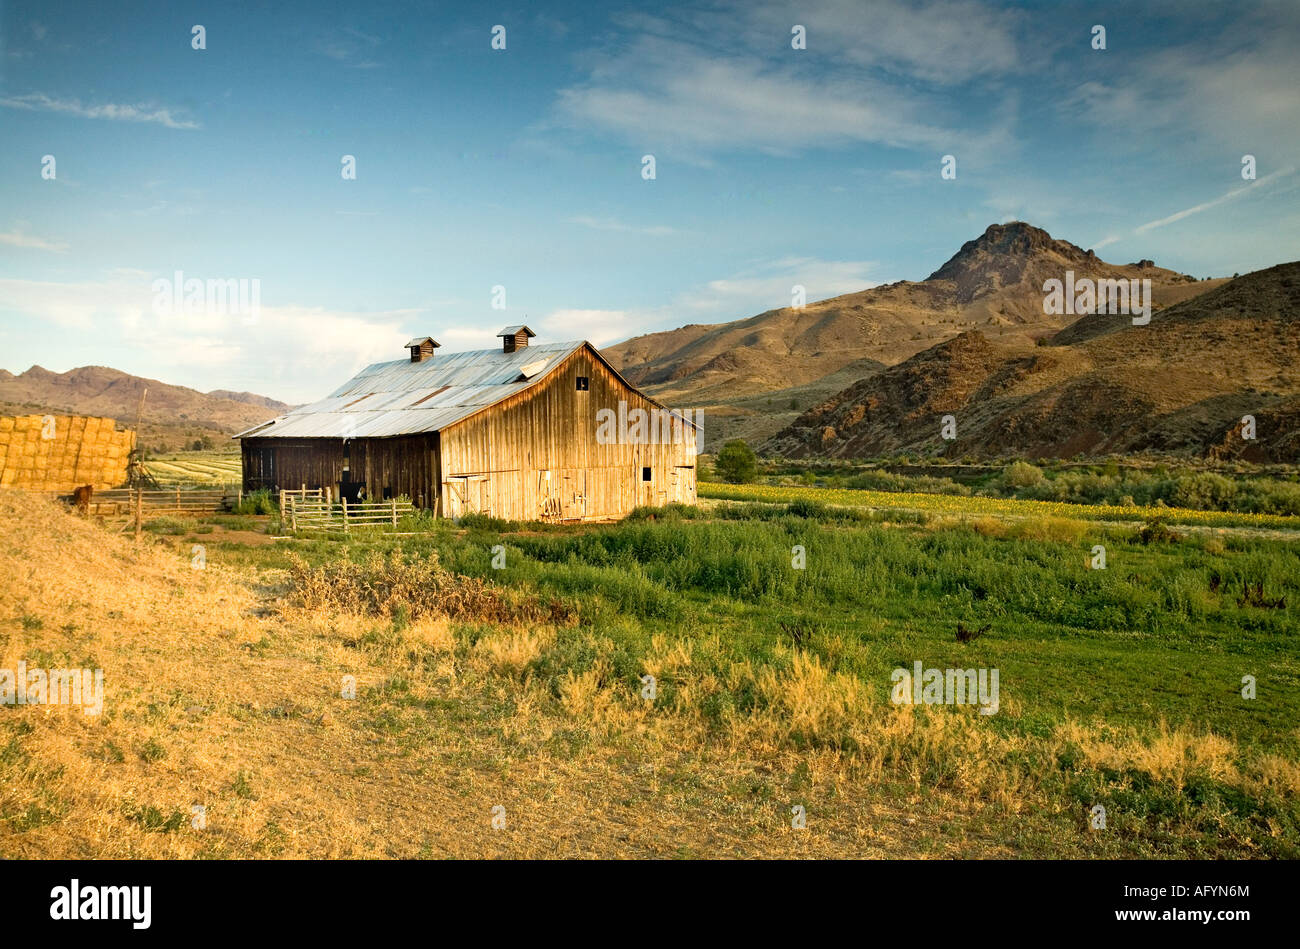 Tramonto su un girasole farm barn annidata in una valle, ruggine colline colorate, soft mattina il sorgere del sole, cavalli mangia fieno Foto Stock